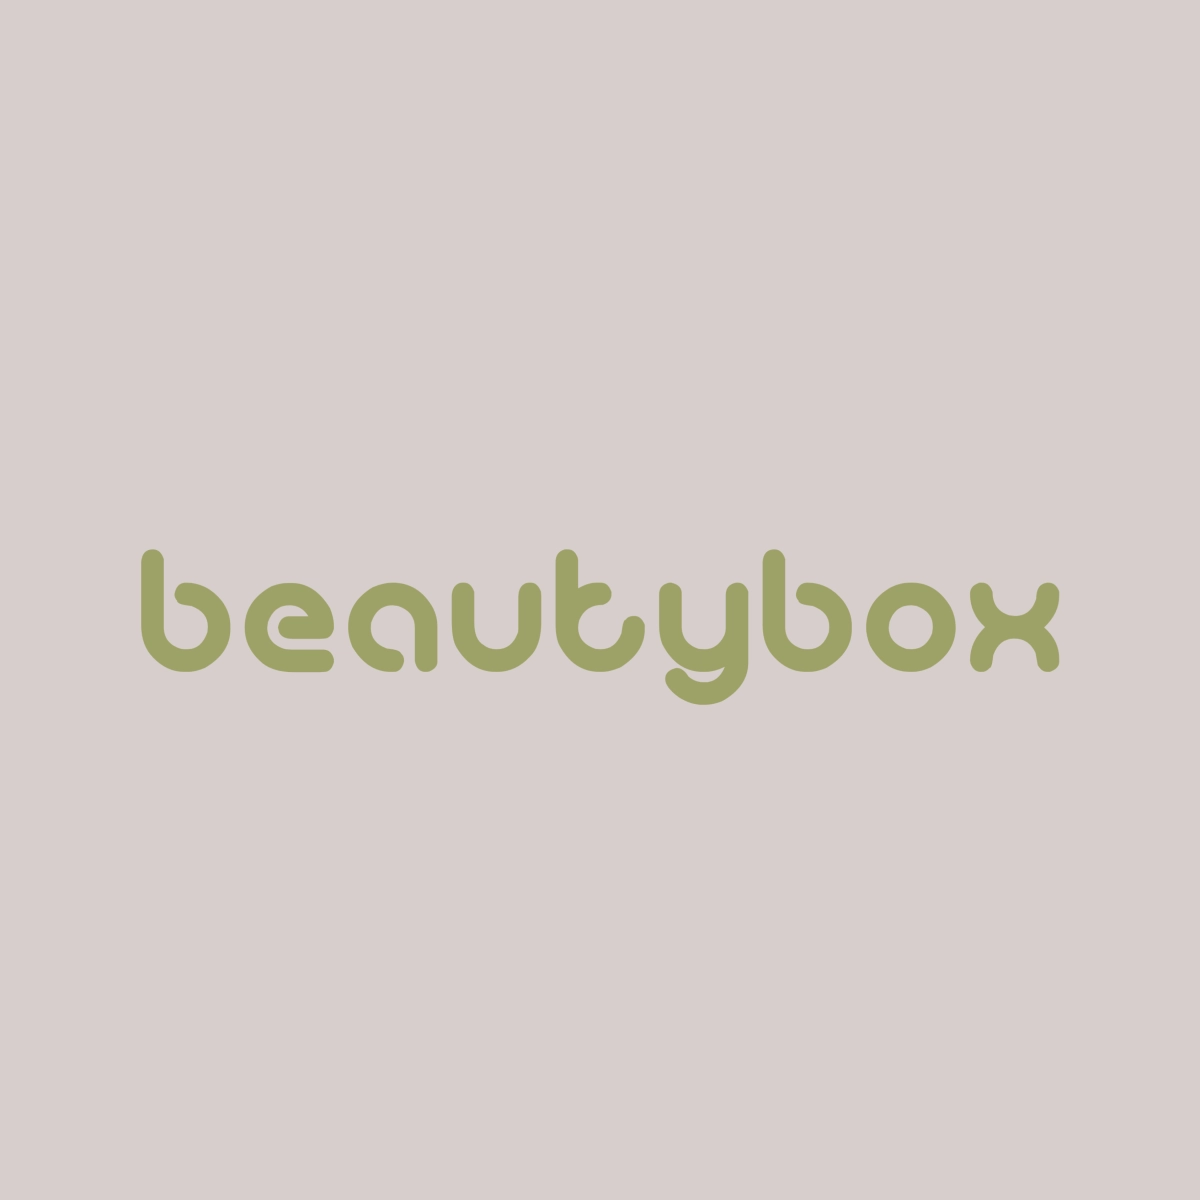 BeautyBox Opensolarium de fondo